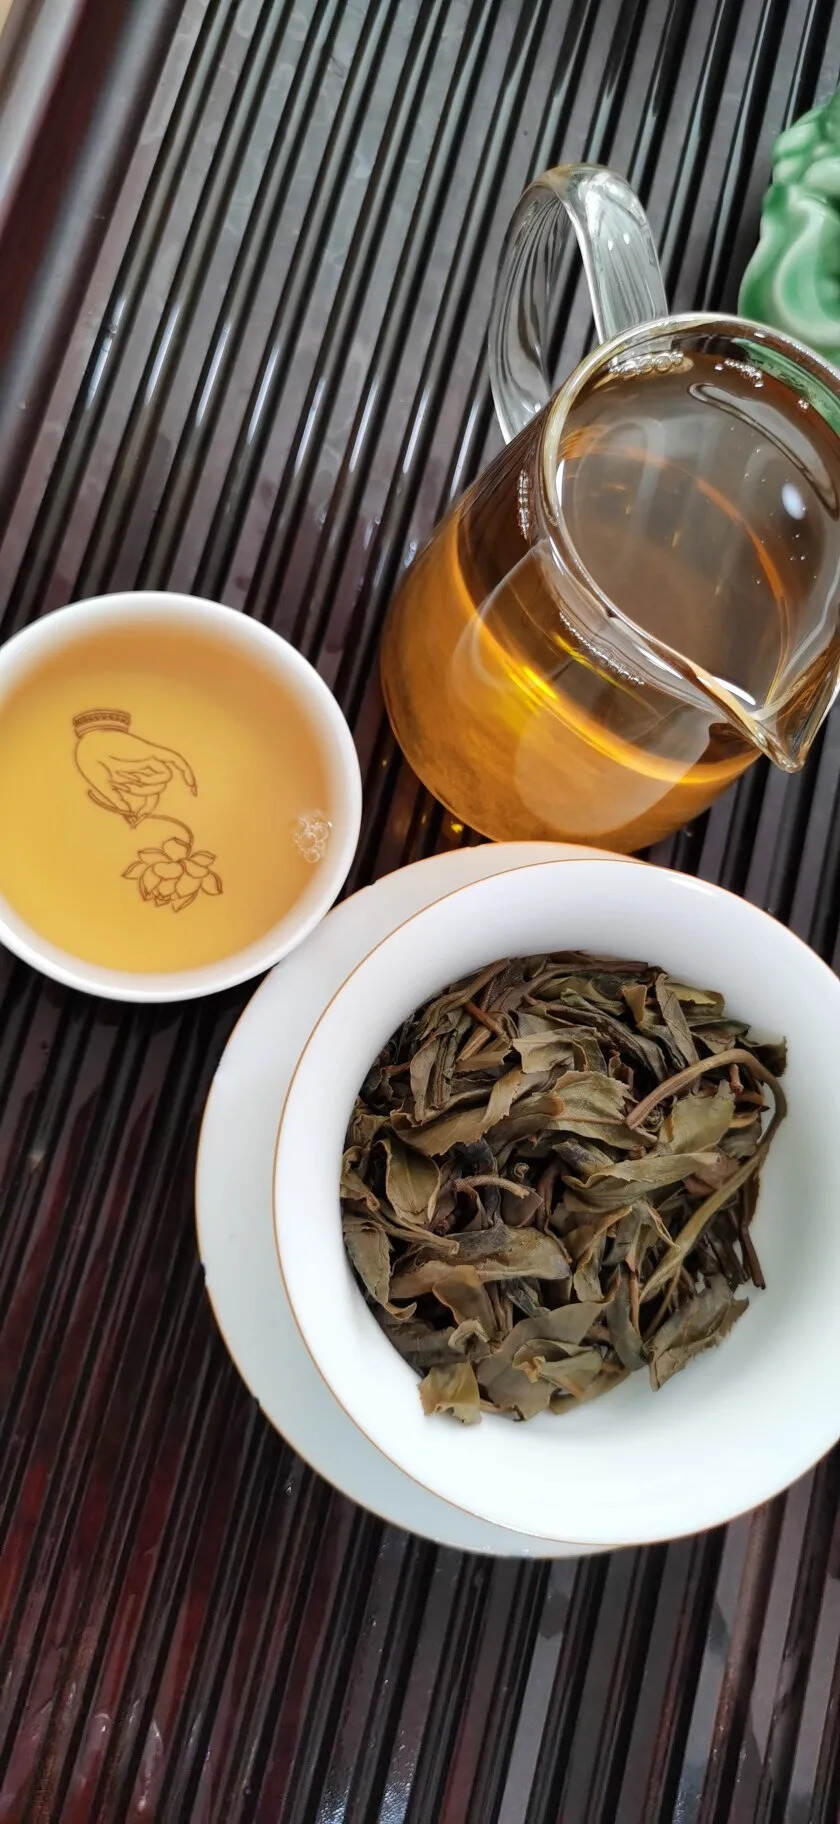 2014年麻黑古树散茶。#广州头条# #普洱茶# #